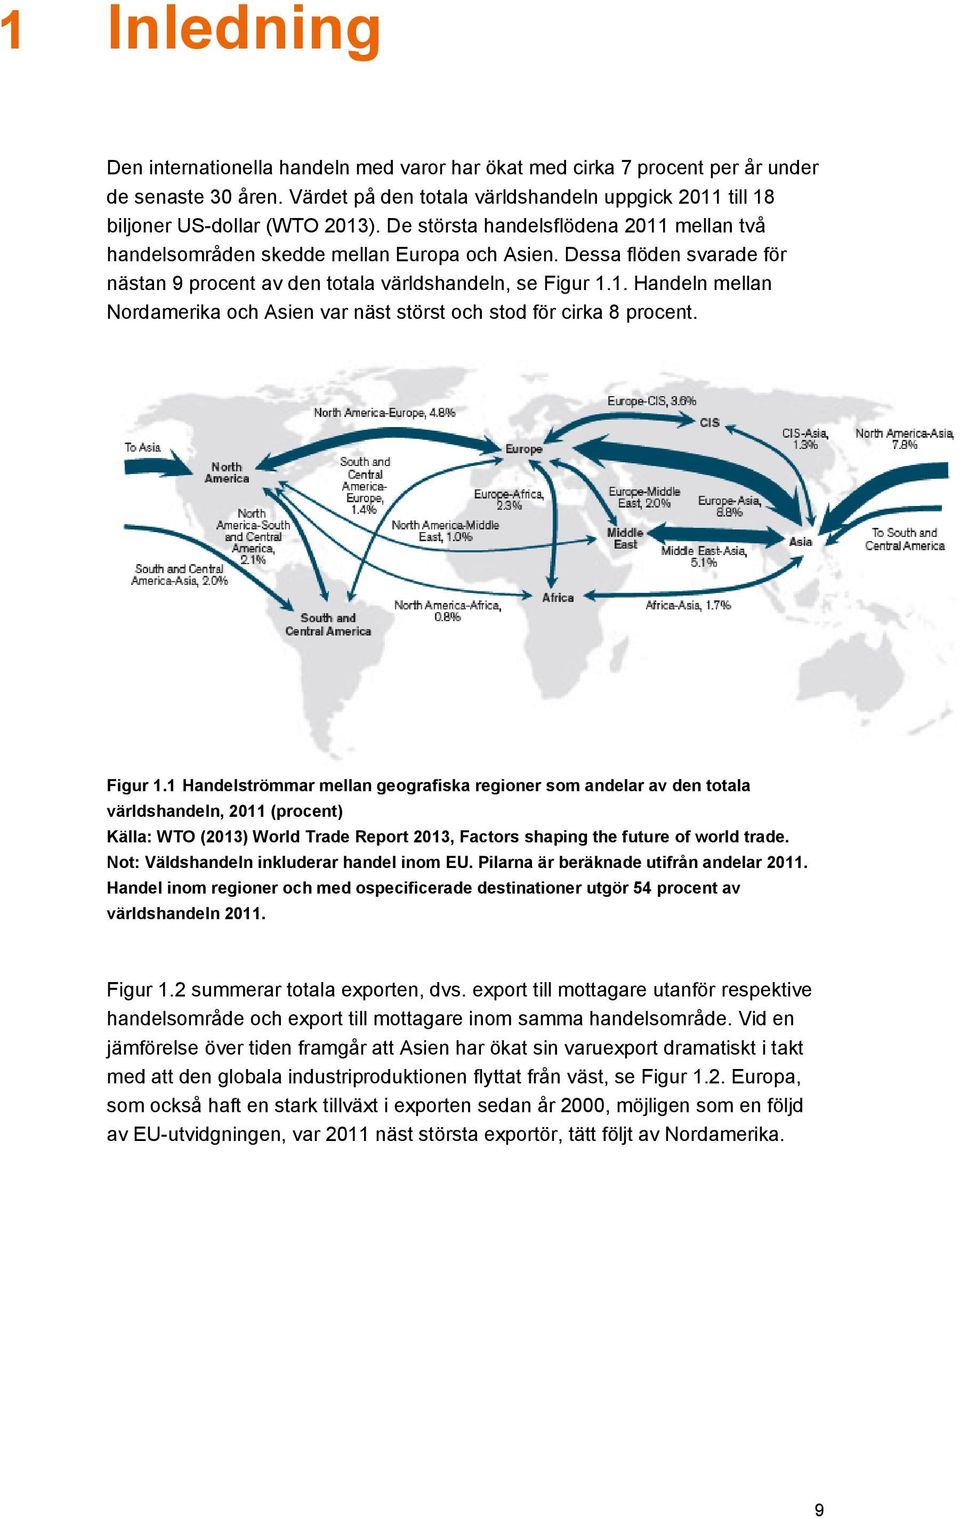 Figur 1.1 Handelströmmar mellan geografiska regioner som andelar av den totala världshandeln, 2011 (procent) Källa: WTO (2013) World Trade Report 2013, Factors shaping the future of world trade.